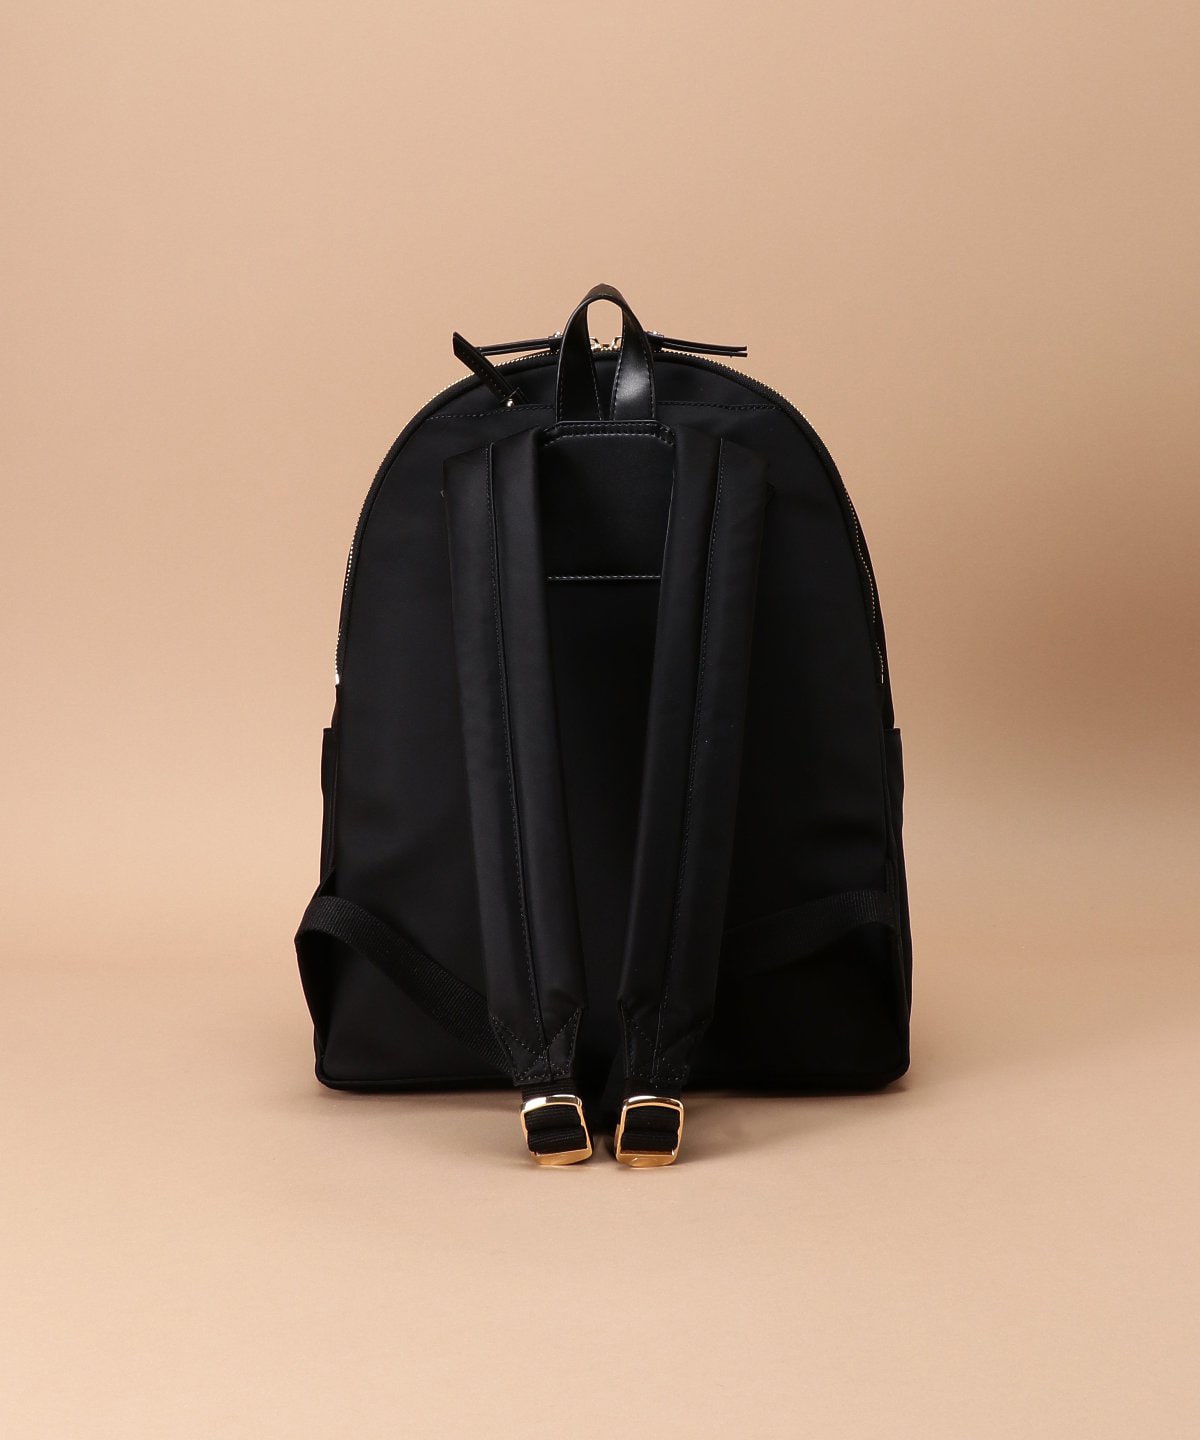 Dream bag for ナイロンリュック Ⅱ